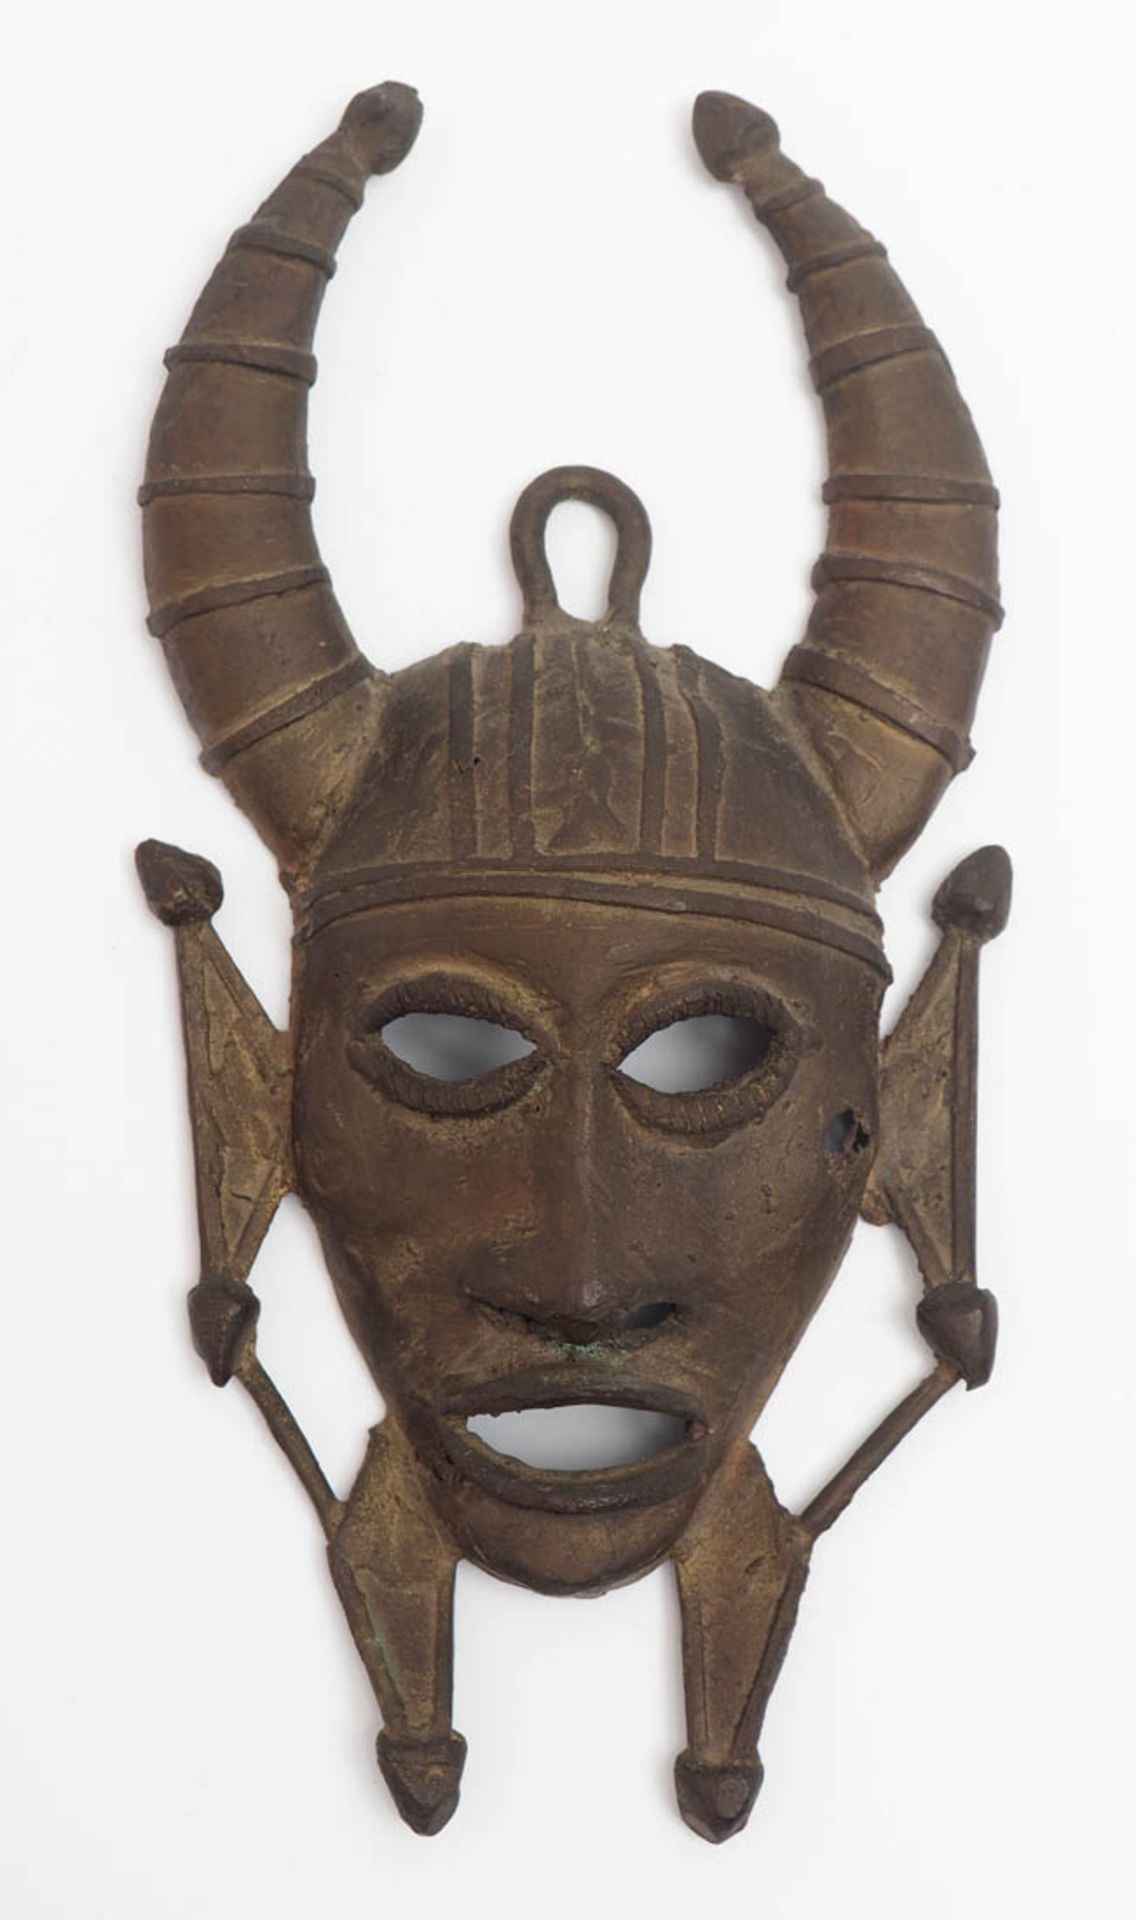 Miniatur-Maske, Afrika Plastisch gerformter, gehörnter Kopf mit Ohr- bzw. Halsschmuck, teilweise mit